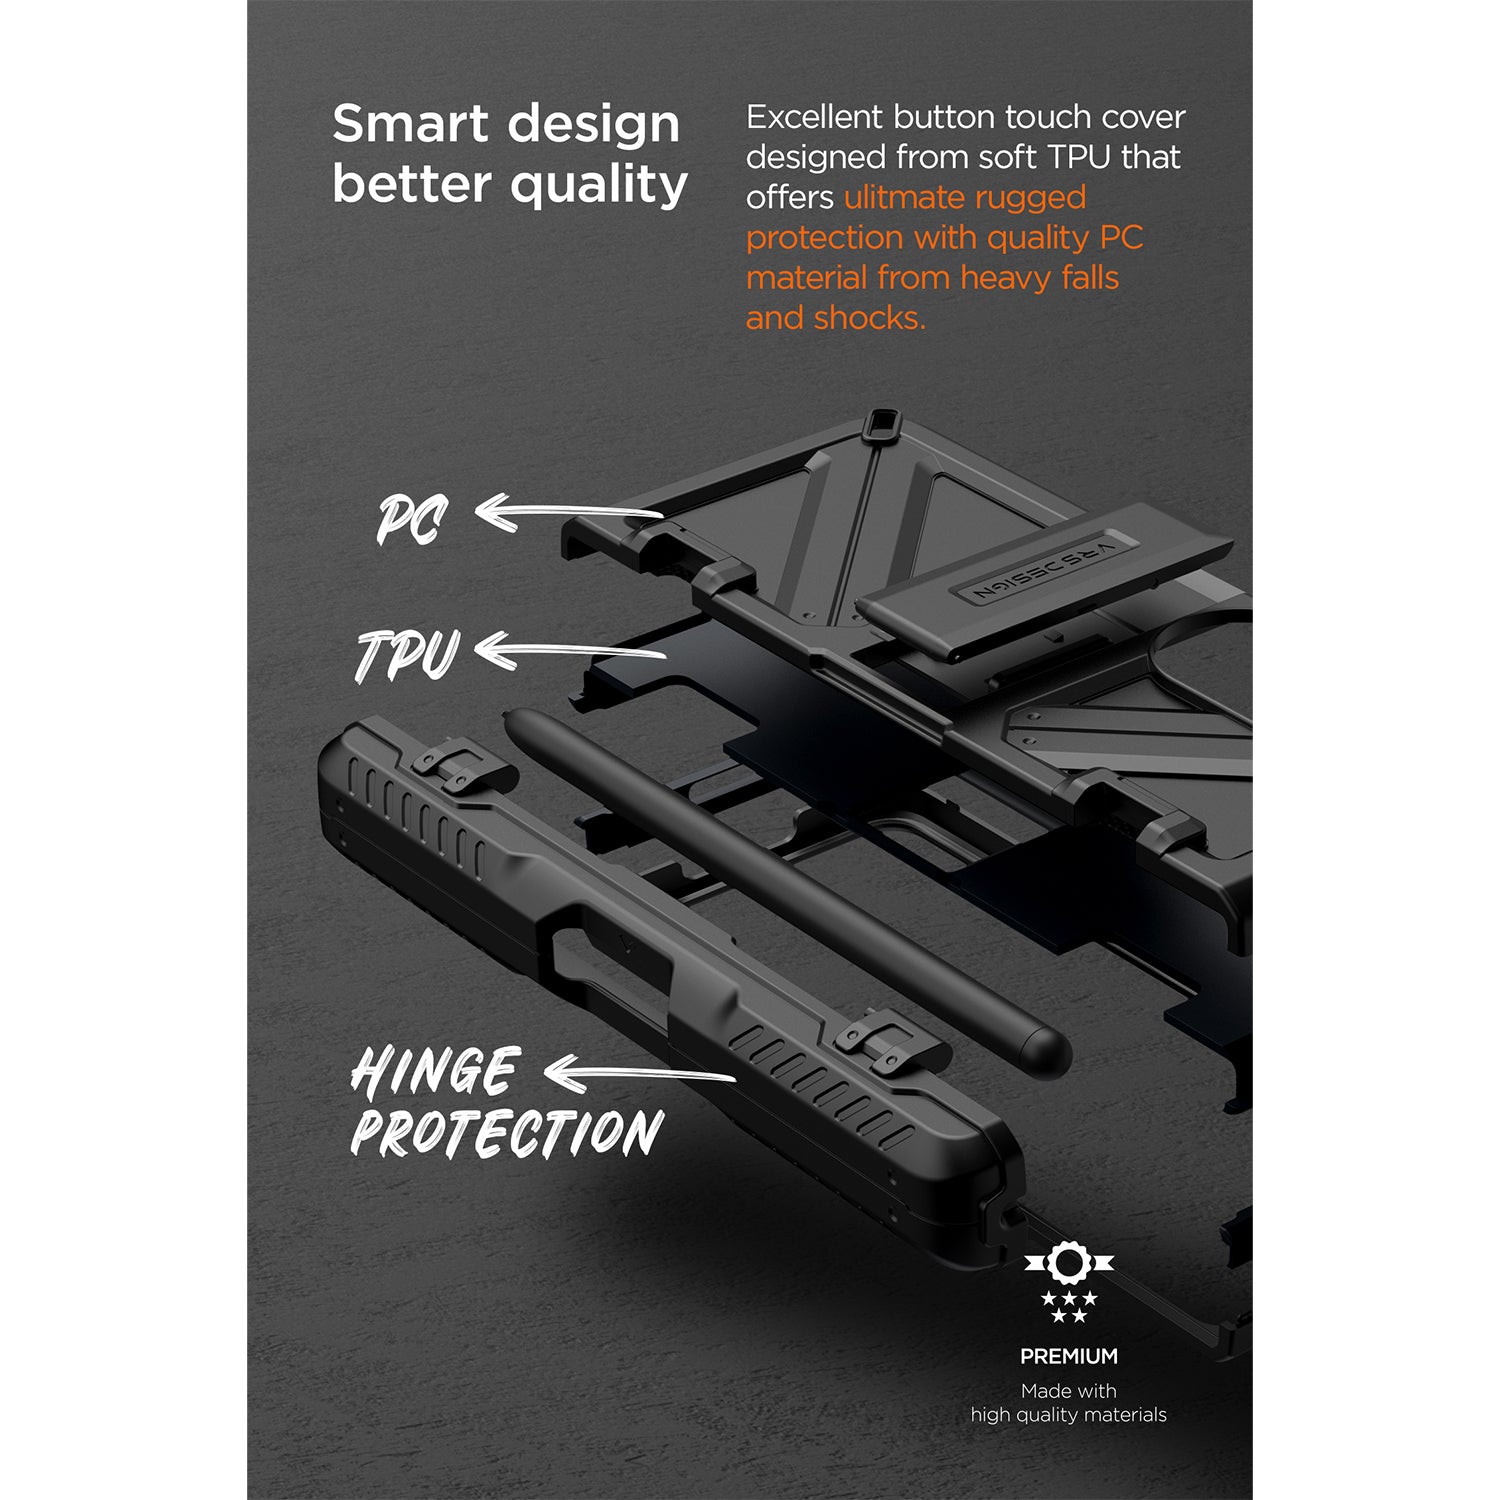 VRS Design Terra Guard Active Ultimate S Case for Samsung Galaxy Z Fold 4 Samsung Case VRS Design 